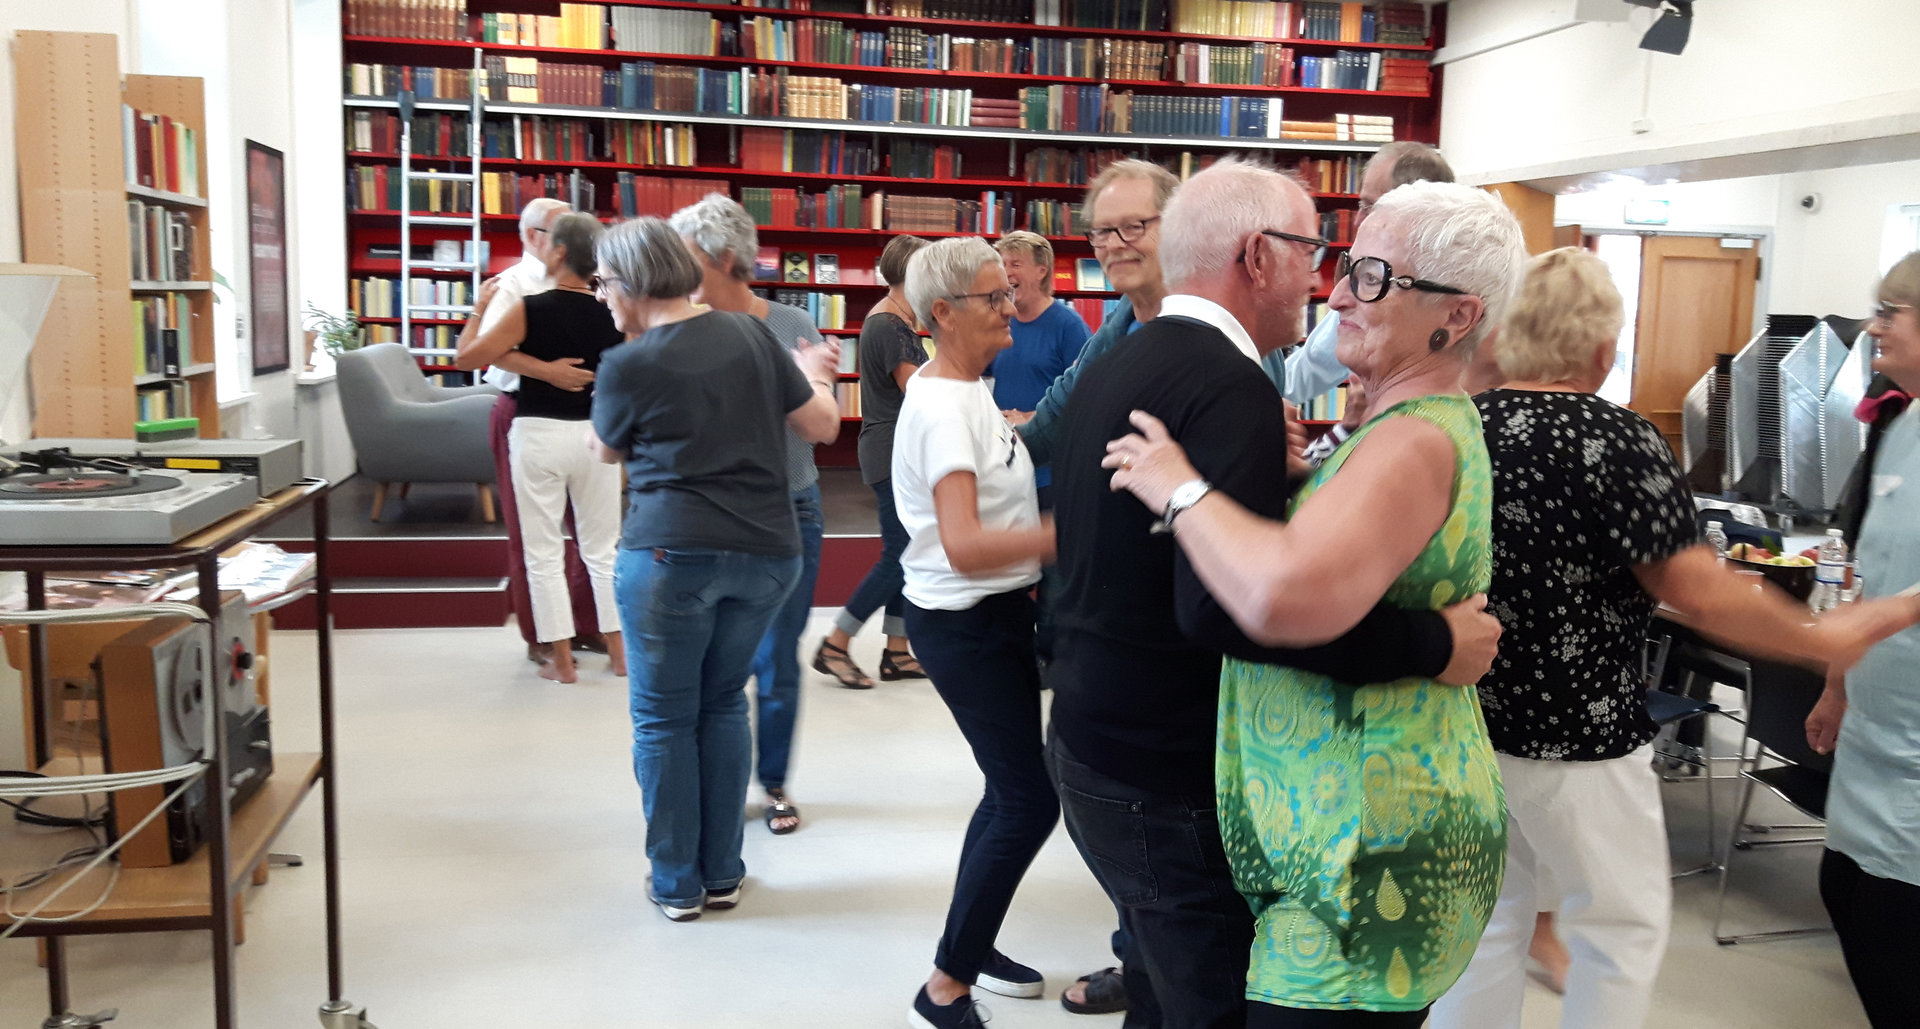 Projektet ”Hold Hjernen Frisk” fortsætter med nye aktiviteter de kommende år. Foto: Janne Clausen Hansen, Varde Bibliotek.